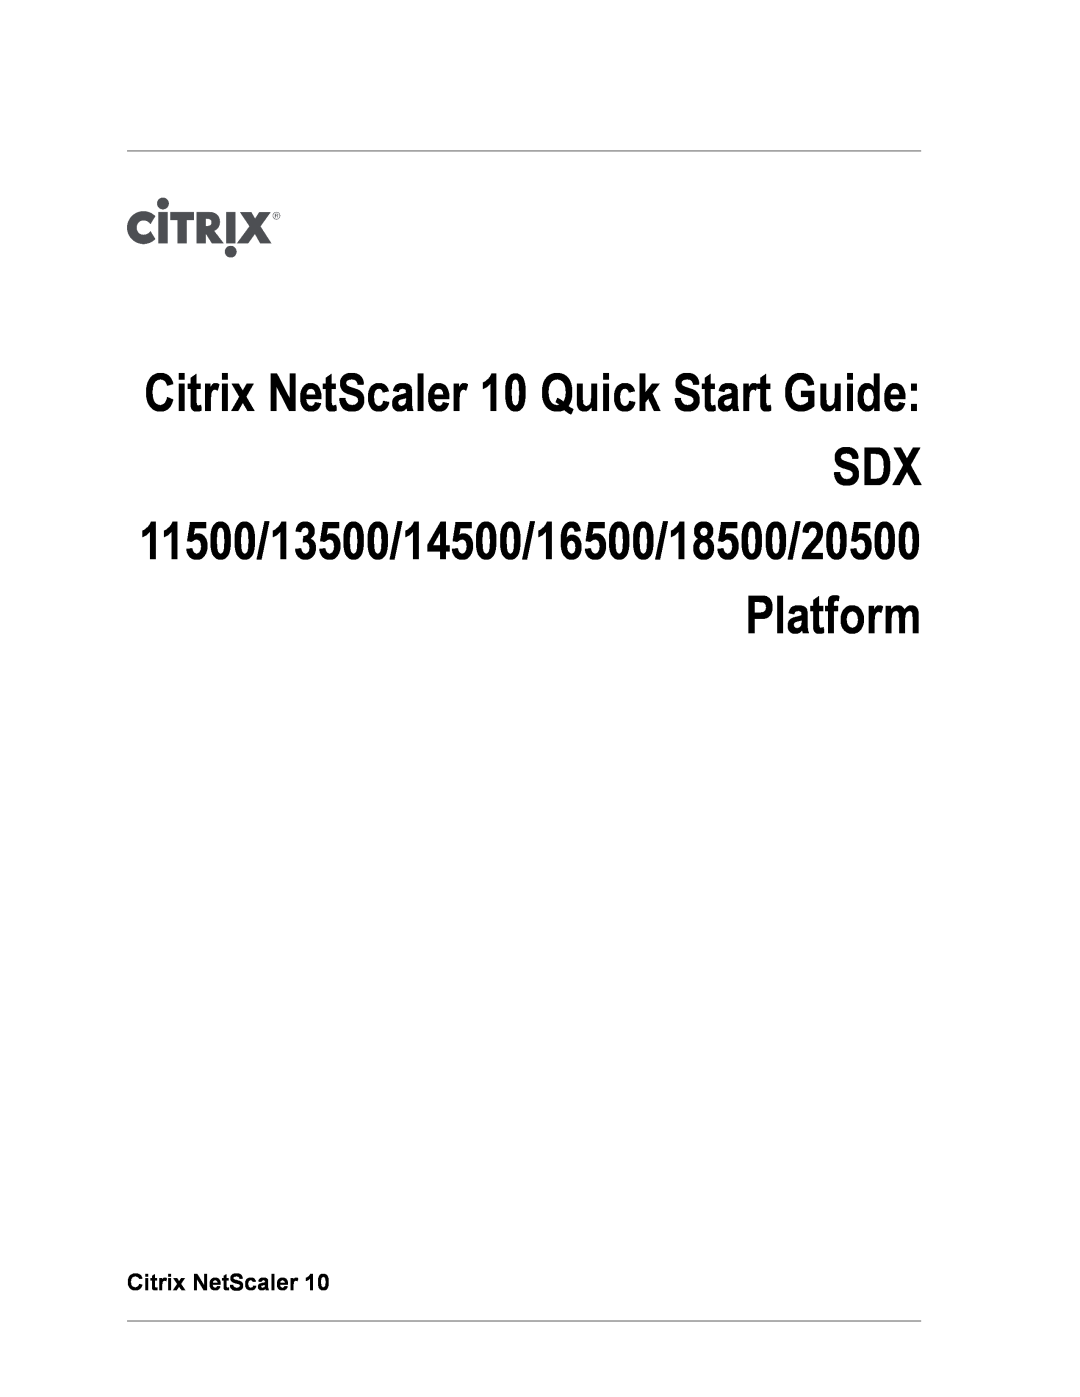 Citrix Systems SDX 16500, SDX 13500, SDX 11500, SDX 20500, SDX 18500 quick start Citrix NetScaler 10 Quick Start Guide 